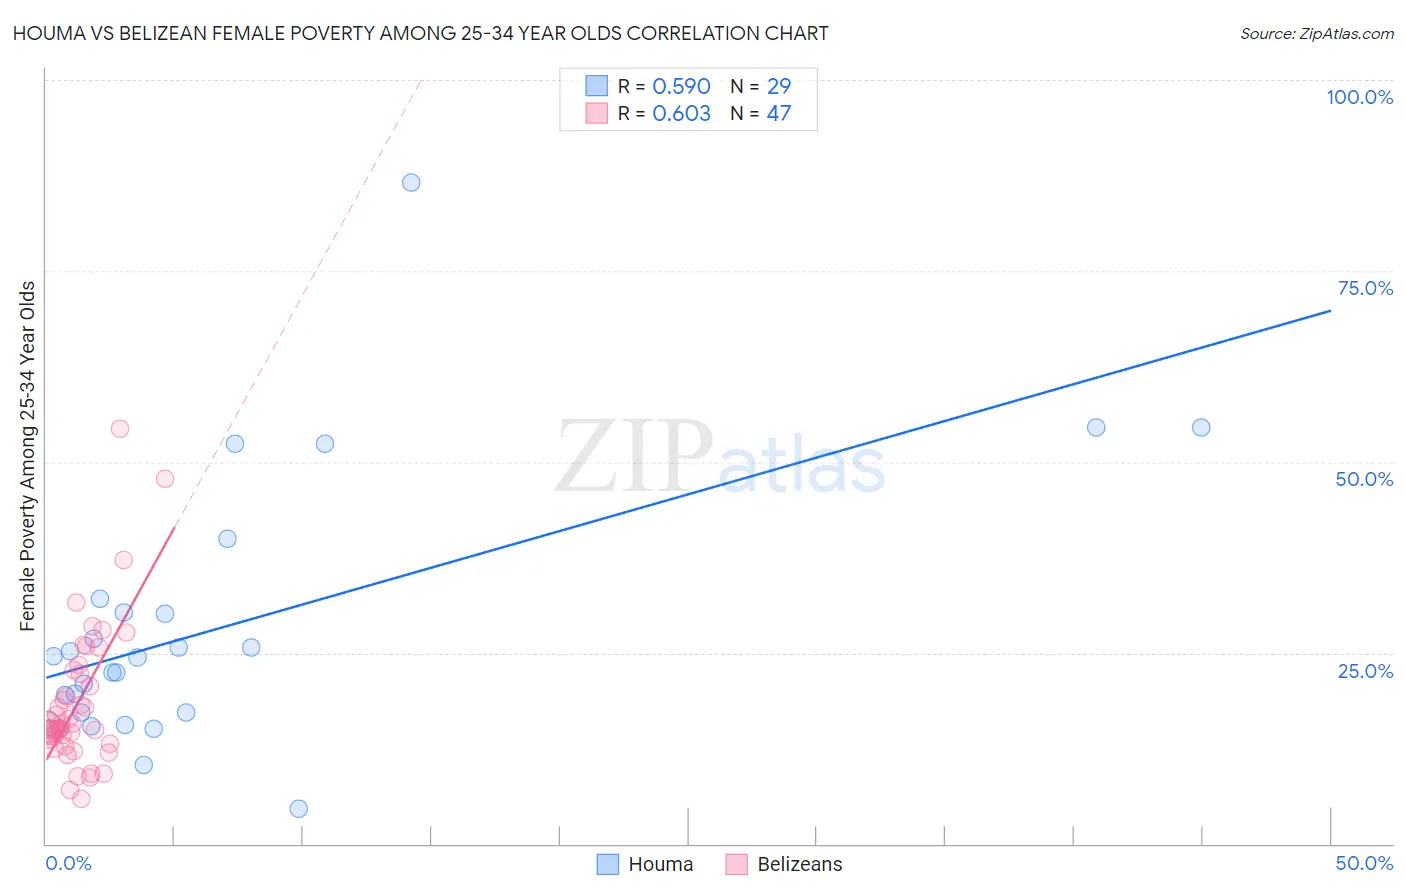 Houma vs Belizean Female Poverty Among 25-34 Year Olds